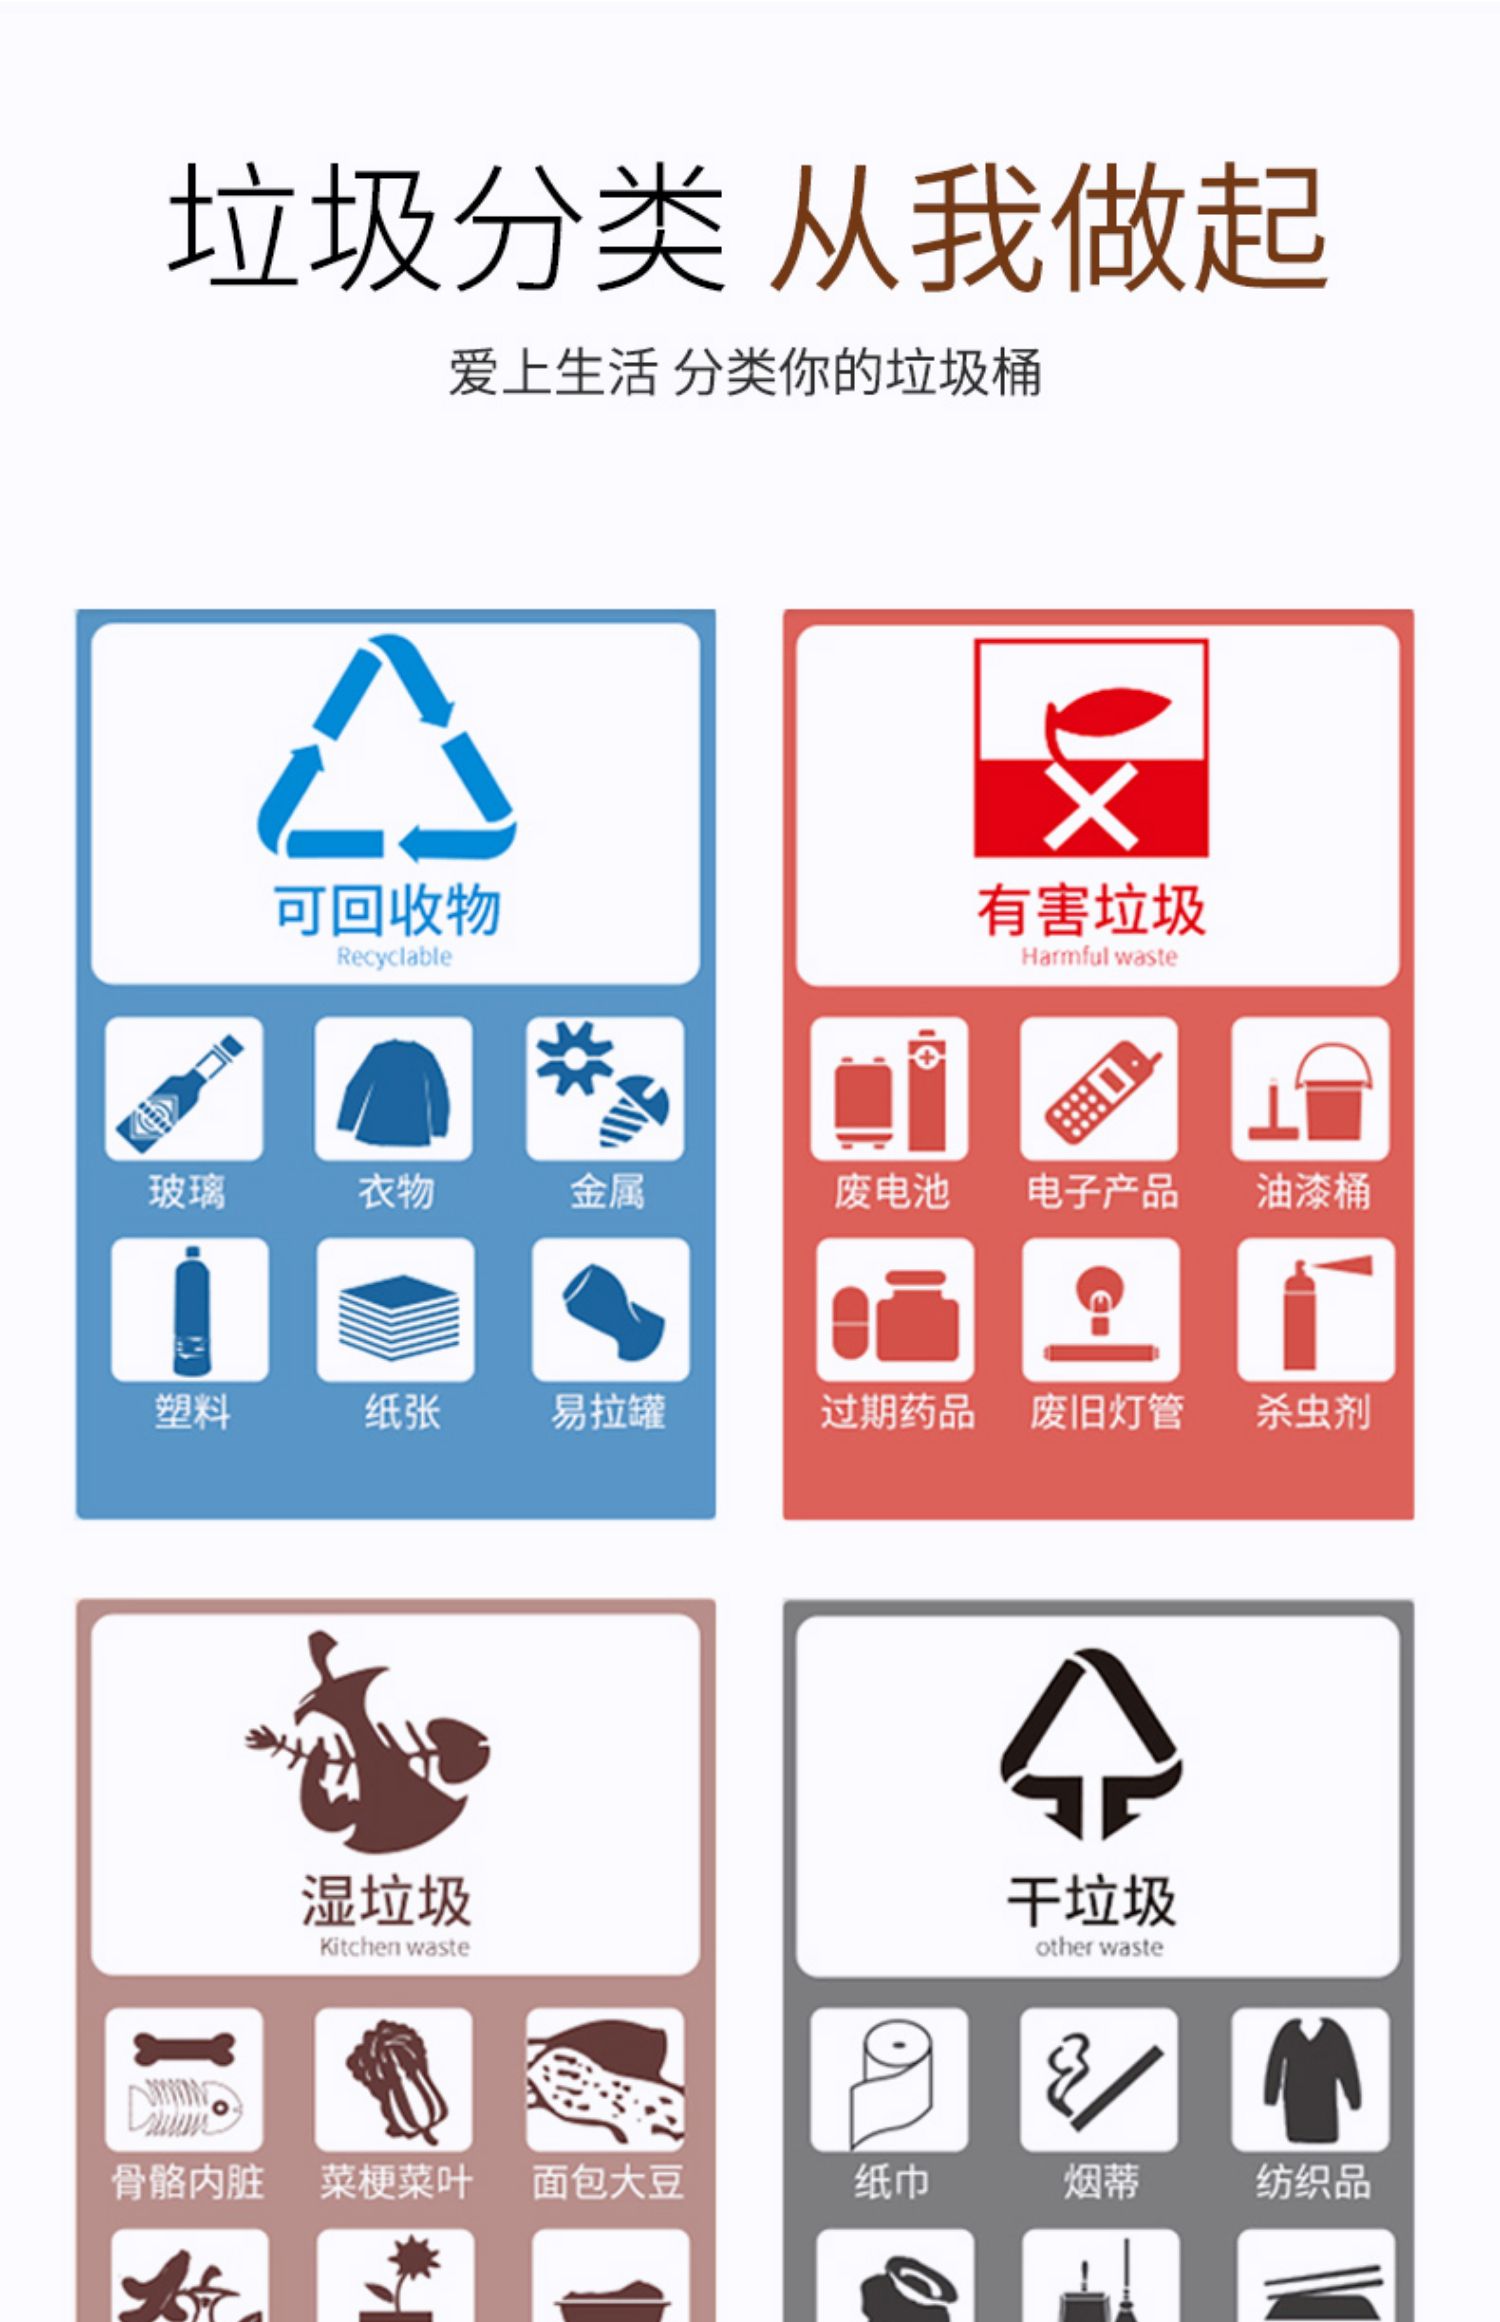 四种垃圾桶的标志含义图片